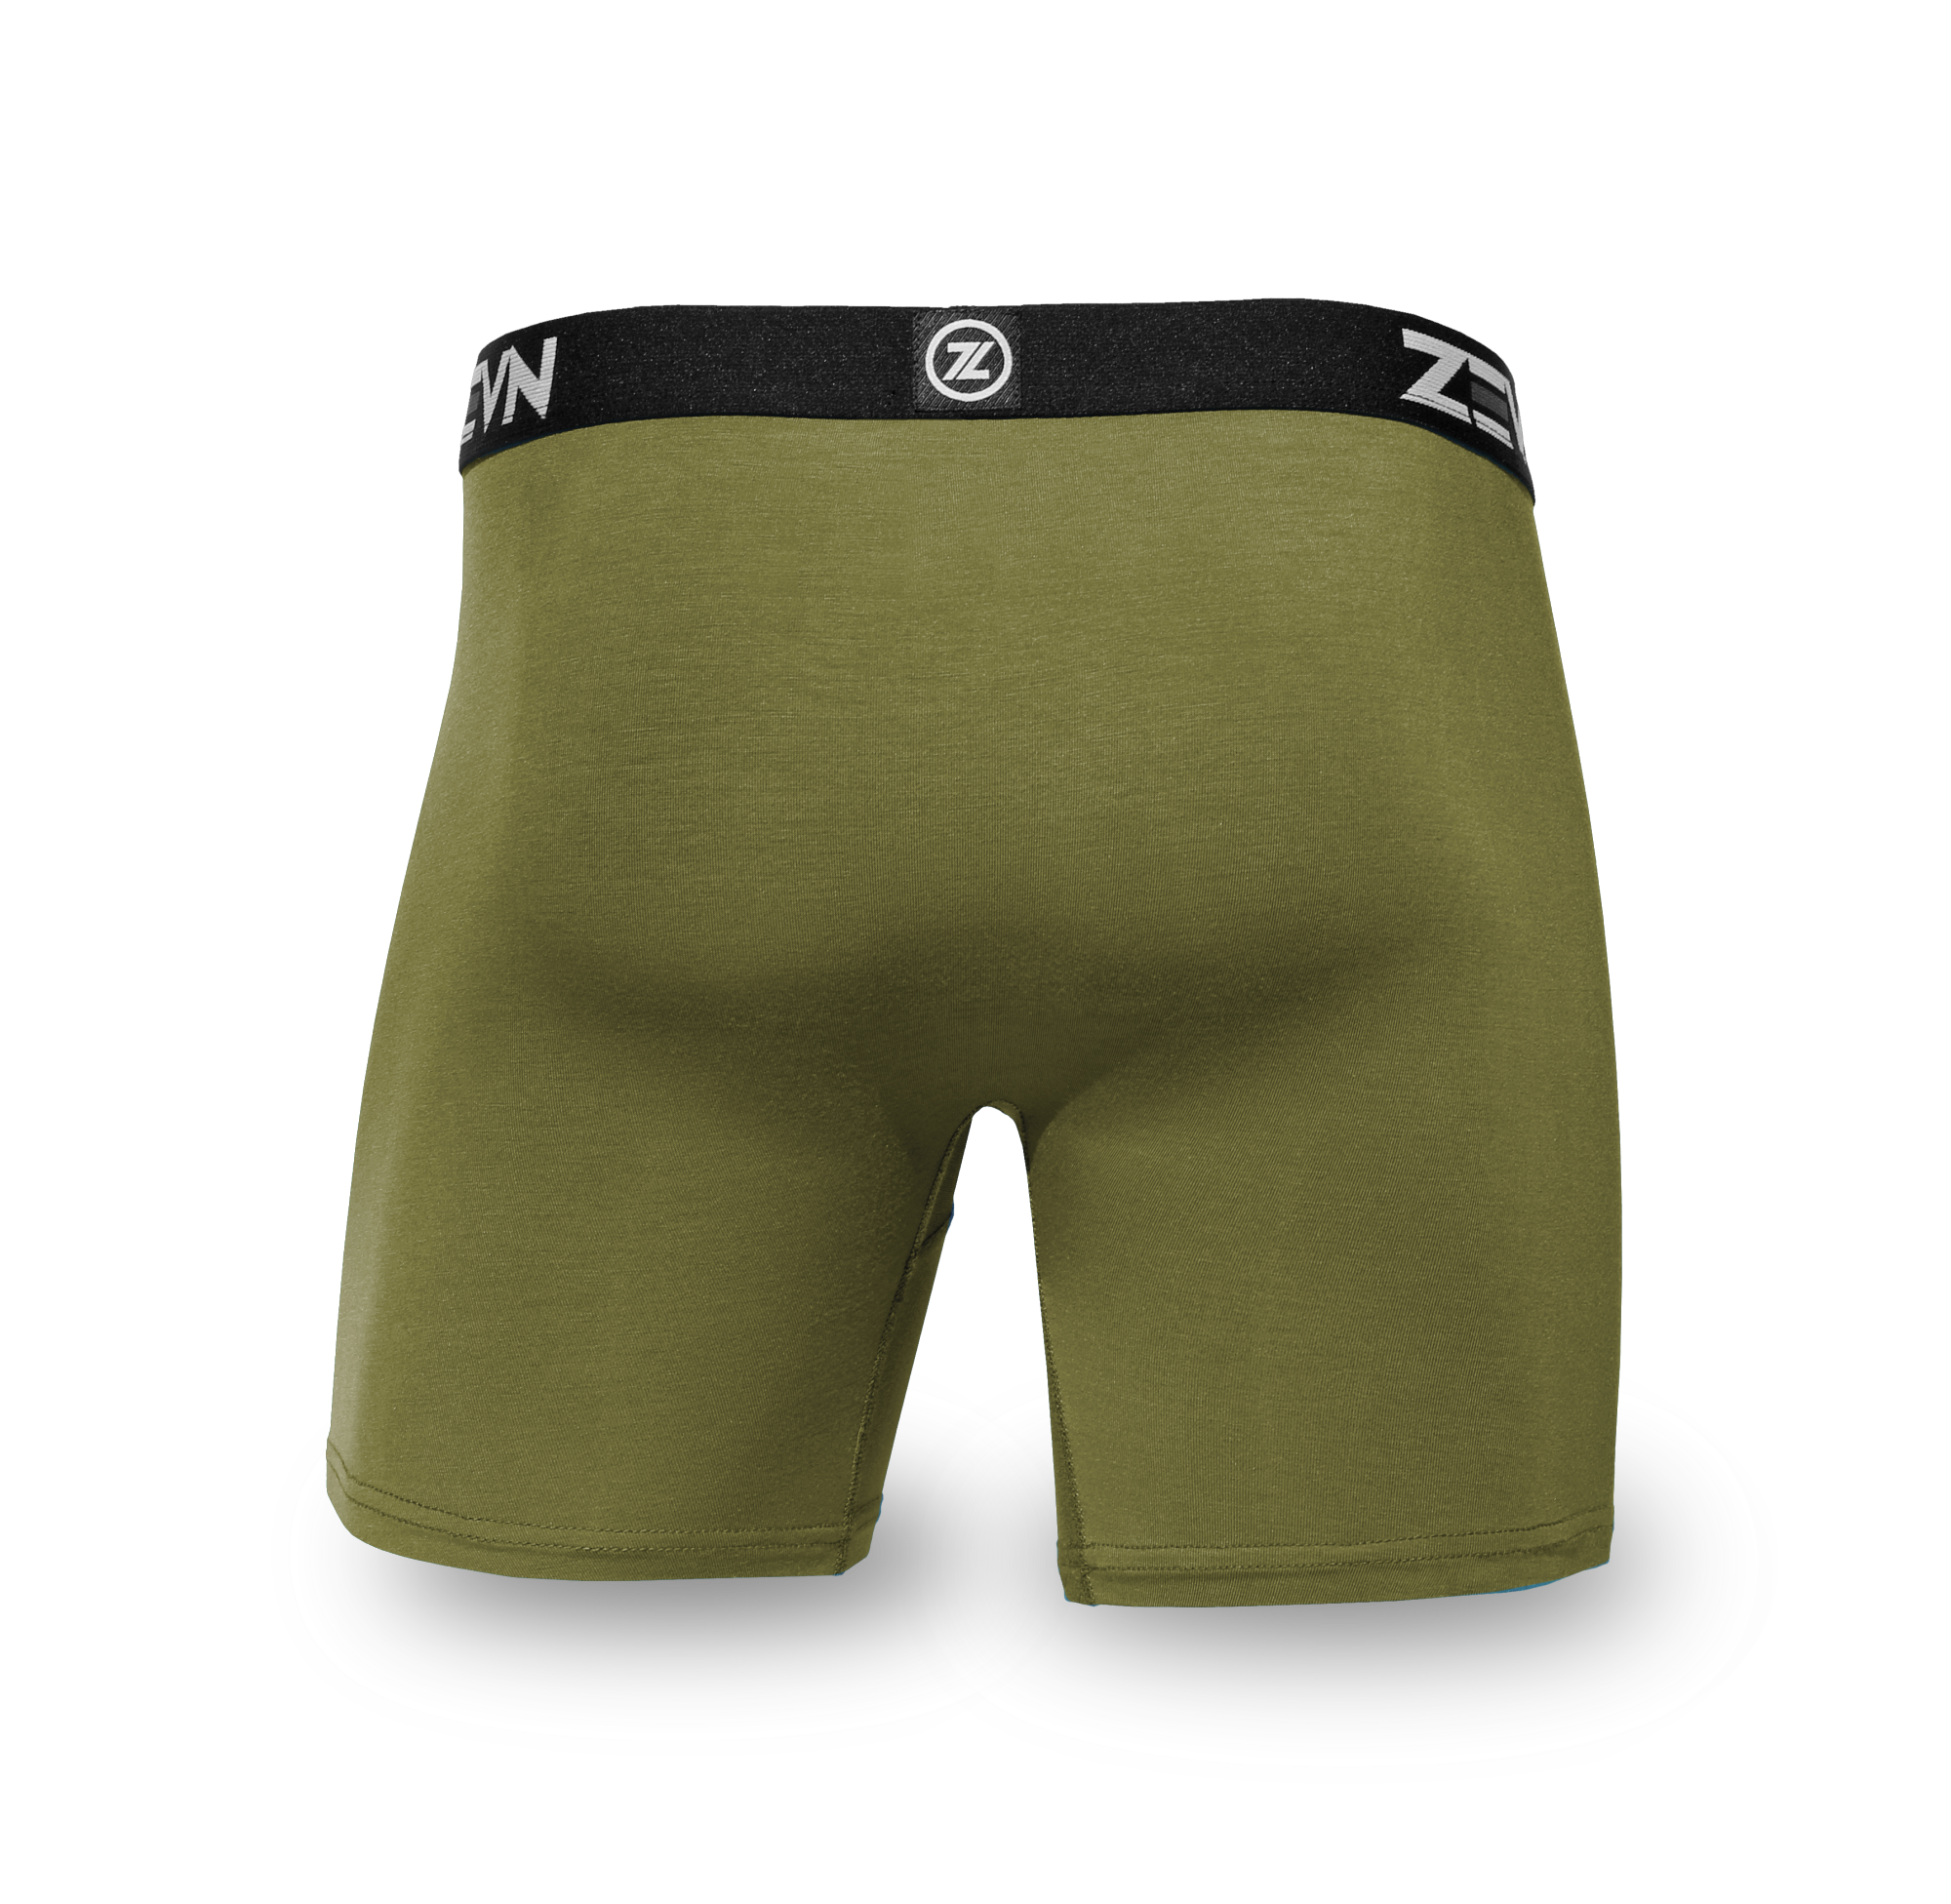 Sports Underwear For Men: ZVM Everyday ZEVN Underwear – ZEVN USA